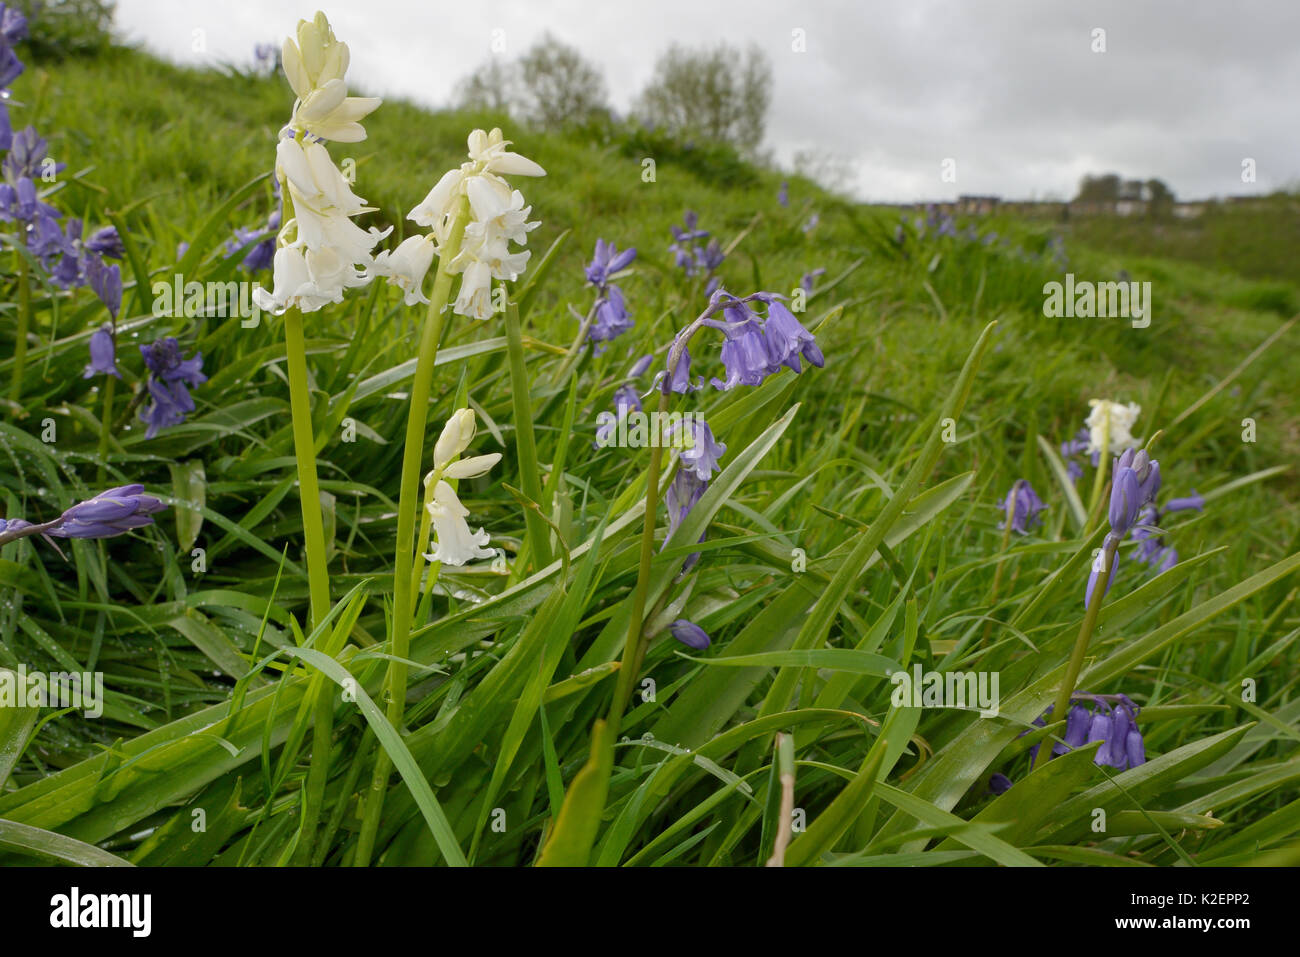 Büschel der weißen und blauen Spanisch bluebells (Hyacinthoides hispanica), eine invasive Arten in Großbritannien, blühen auf kommunalem Abwasser Boden, Salisbury, Großbritannien, April. Stockfoto